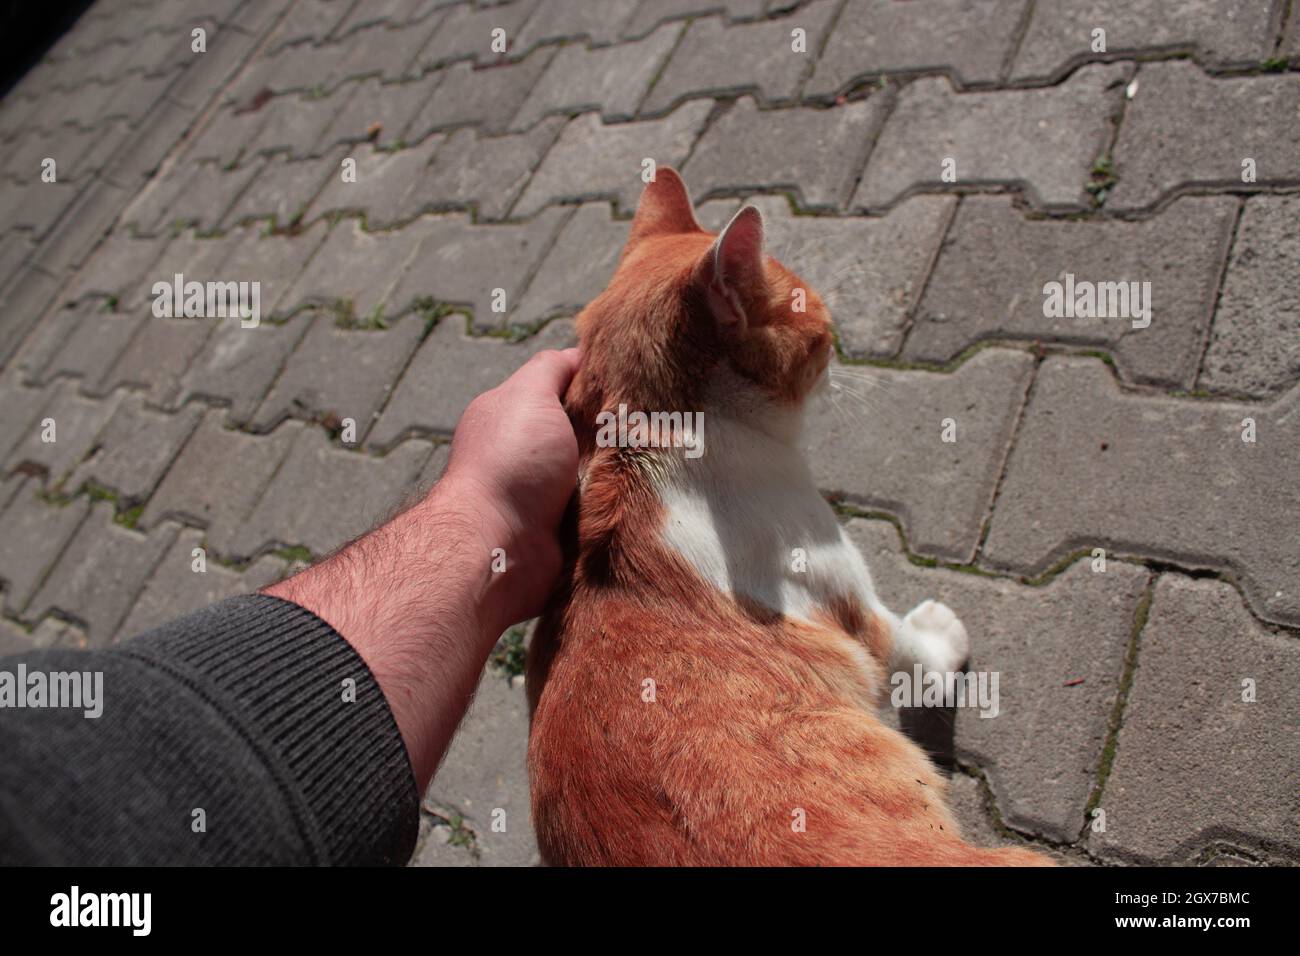 Mann streicheln eine orangefarbene streunende Katze mit der Hand. Niedliche Katze  streichelt. Nicht jede Katze lässt Menschen ihren Bauch berühren  Stockfotografie - Alamy